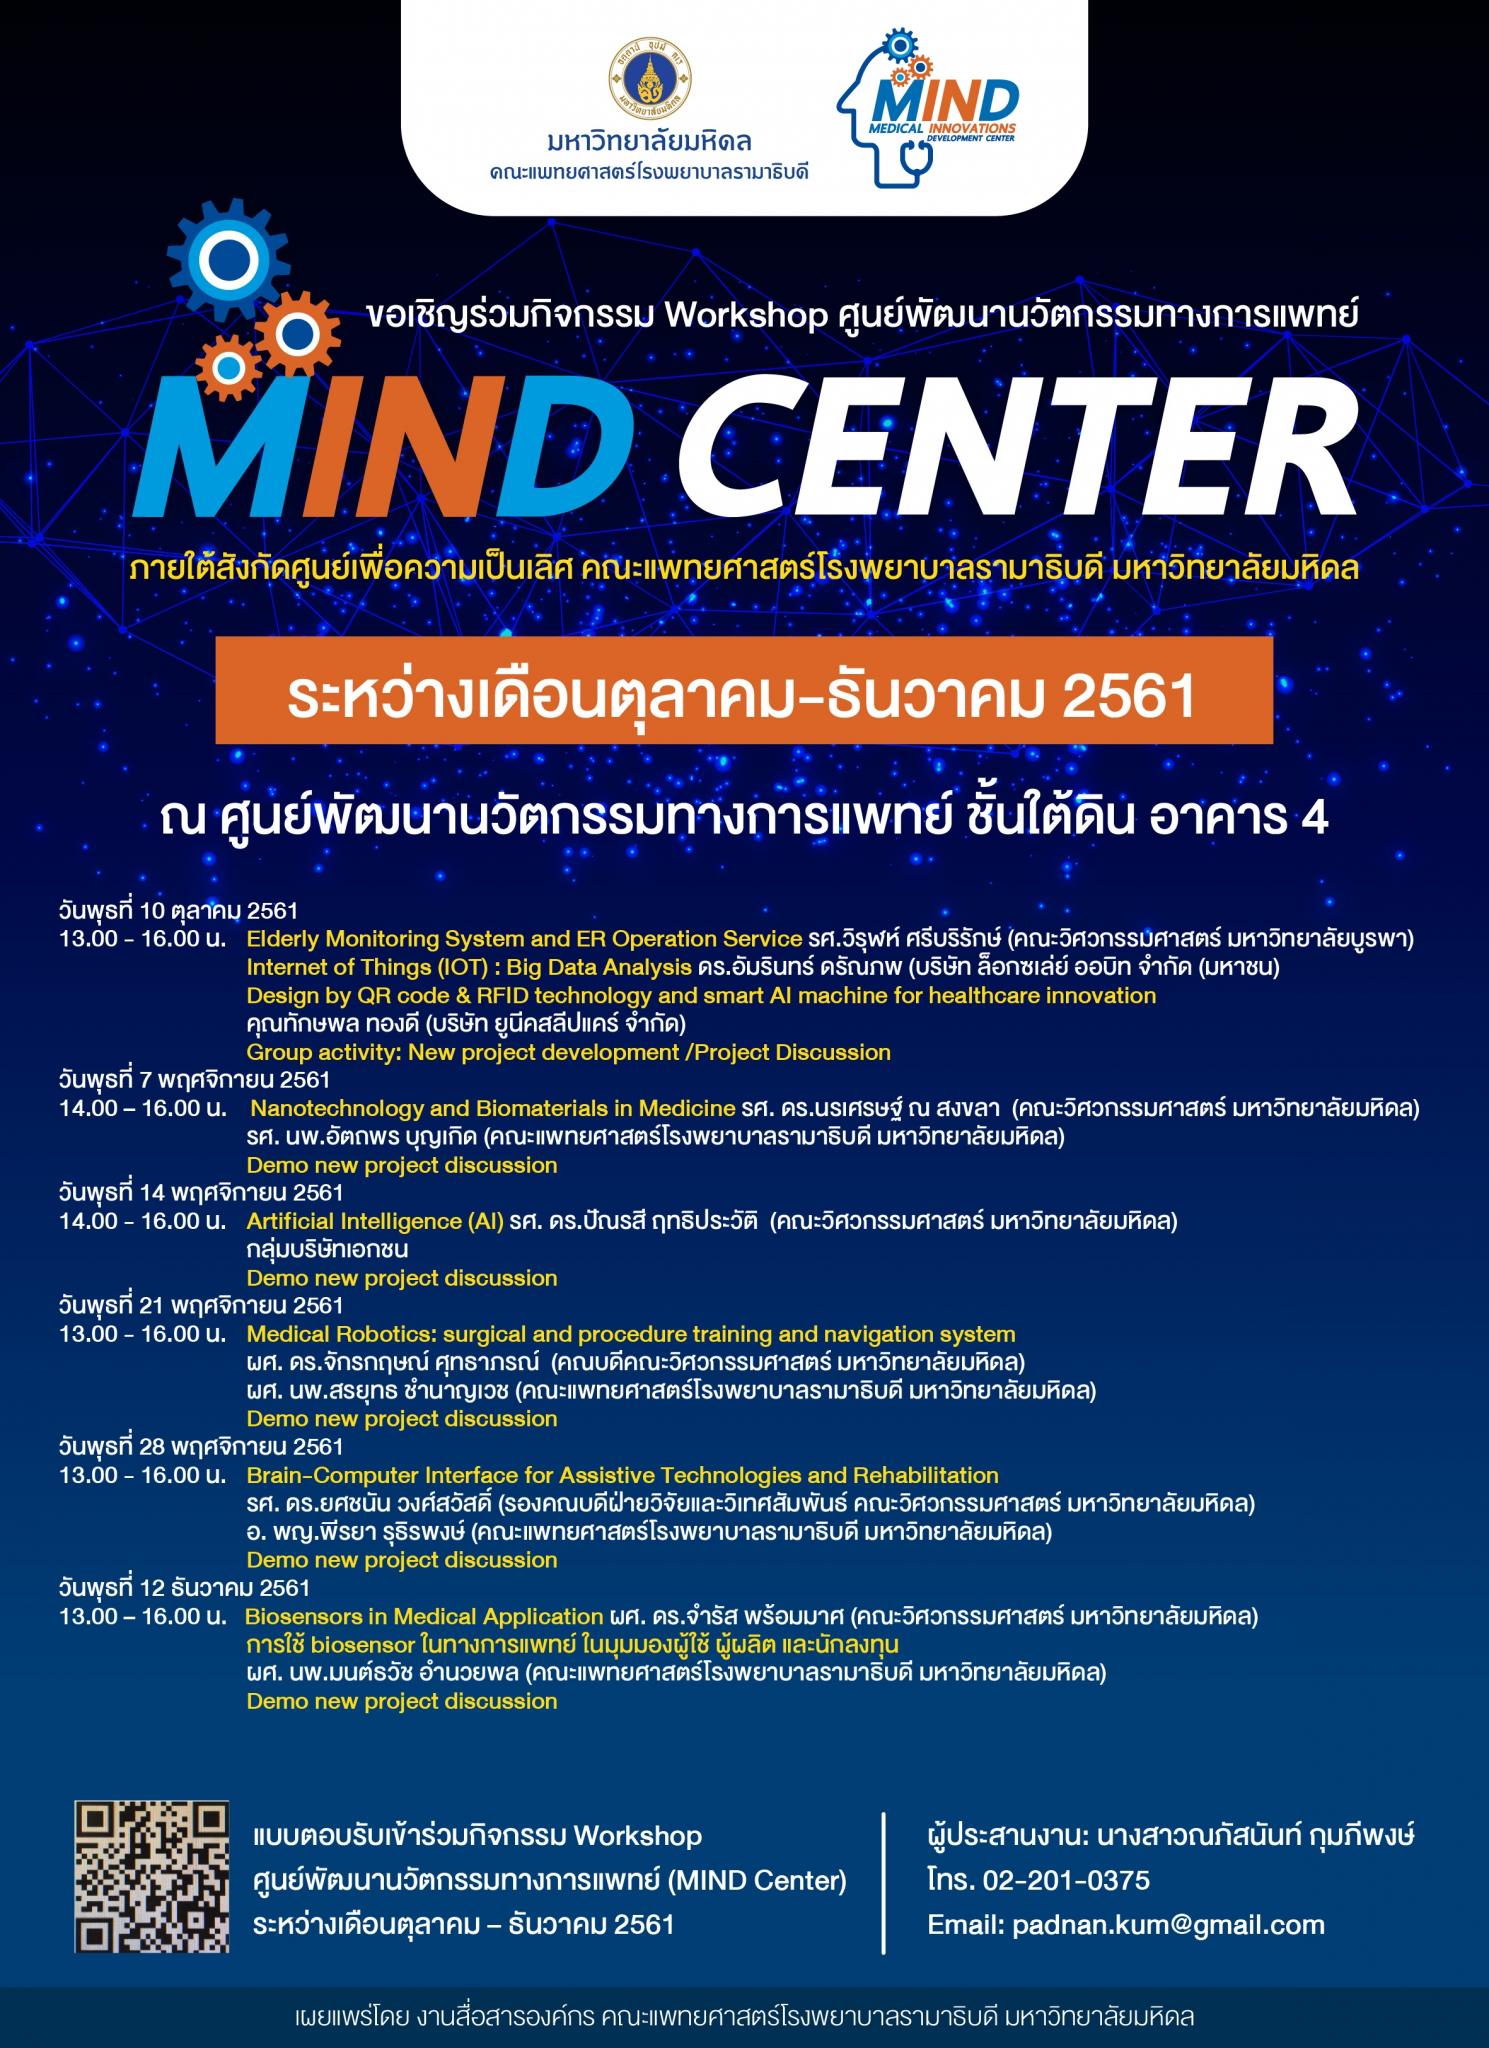 ขอเชิญร่วมกิจกรรม Workshop ศูนย์พัฒนานวัตกรรมทางการแพทย์ "MIND CENTER"